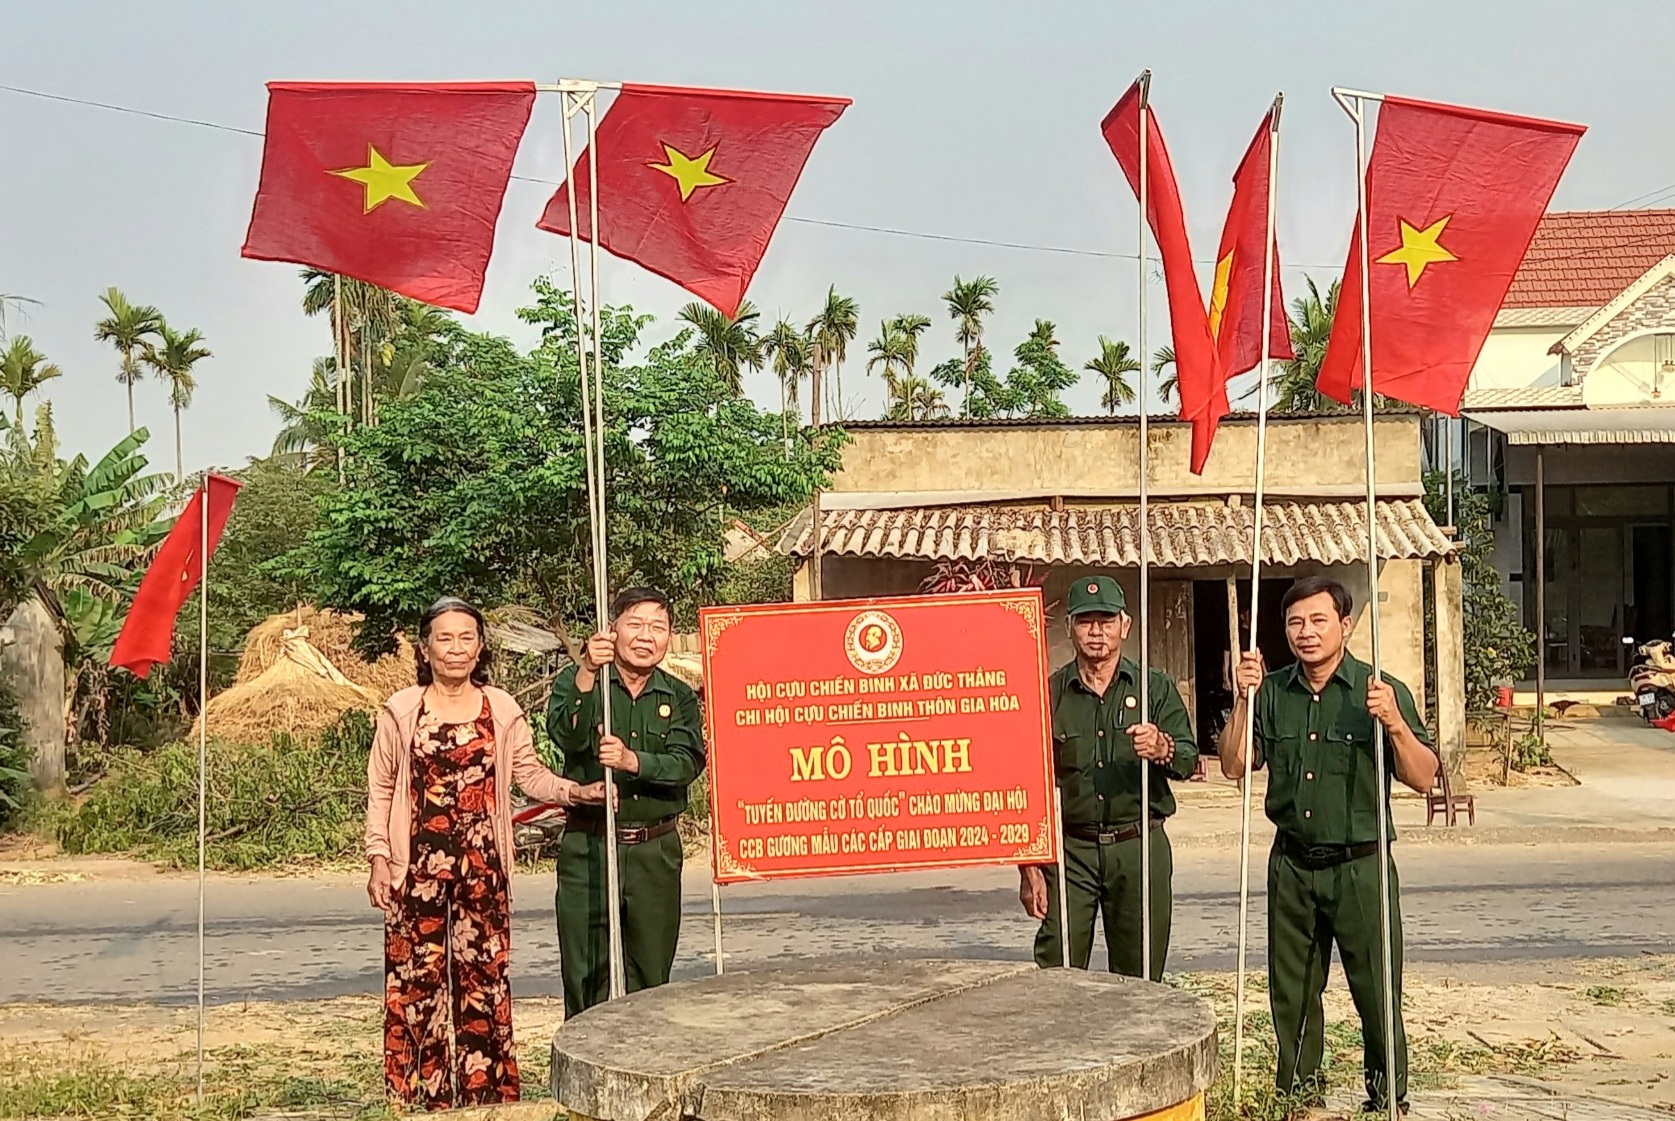 Ra mắt Mô hình “Tuyến đường cờ Tổ Quốc” Tại chi hội Cựu chiến binh thôn Gia Hòa